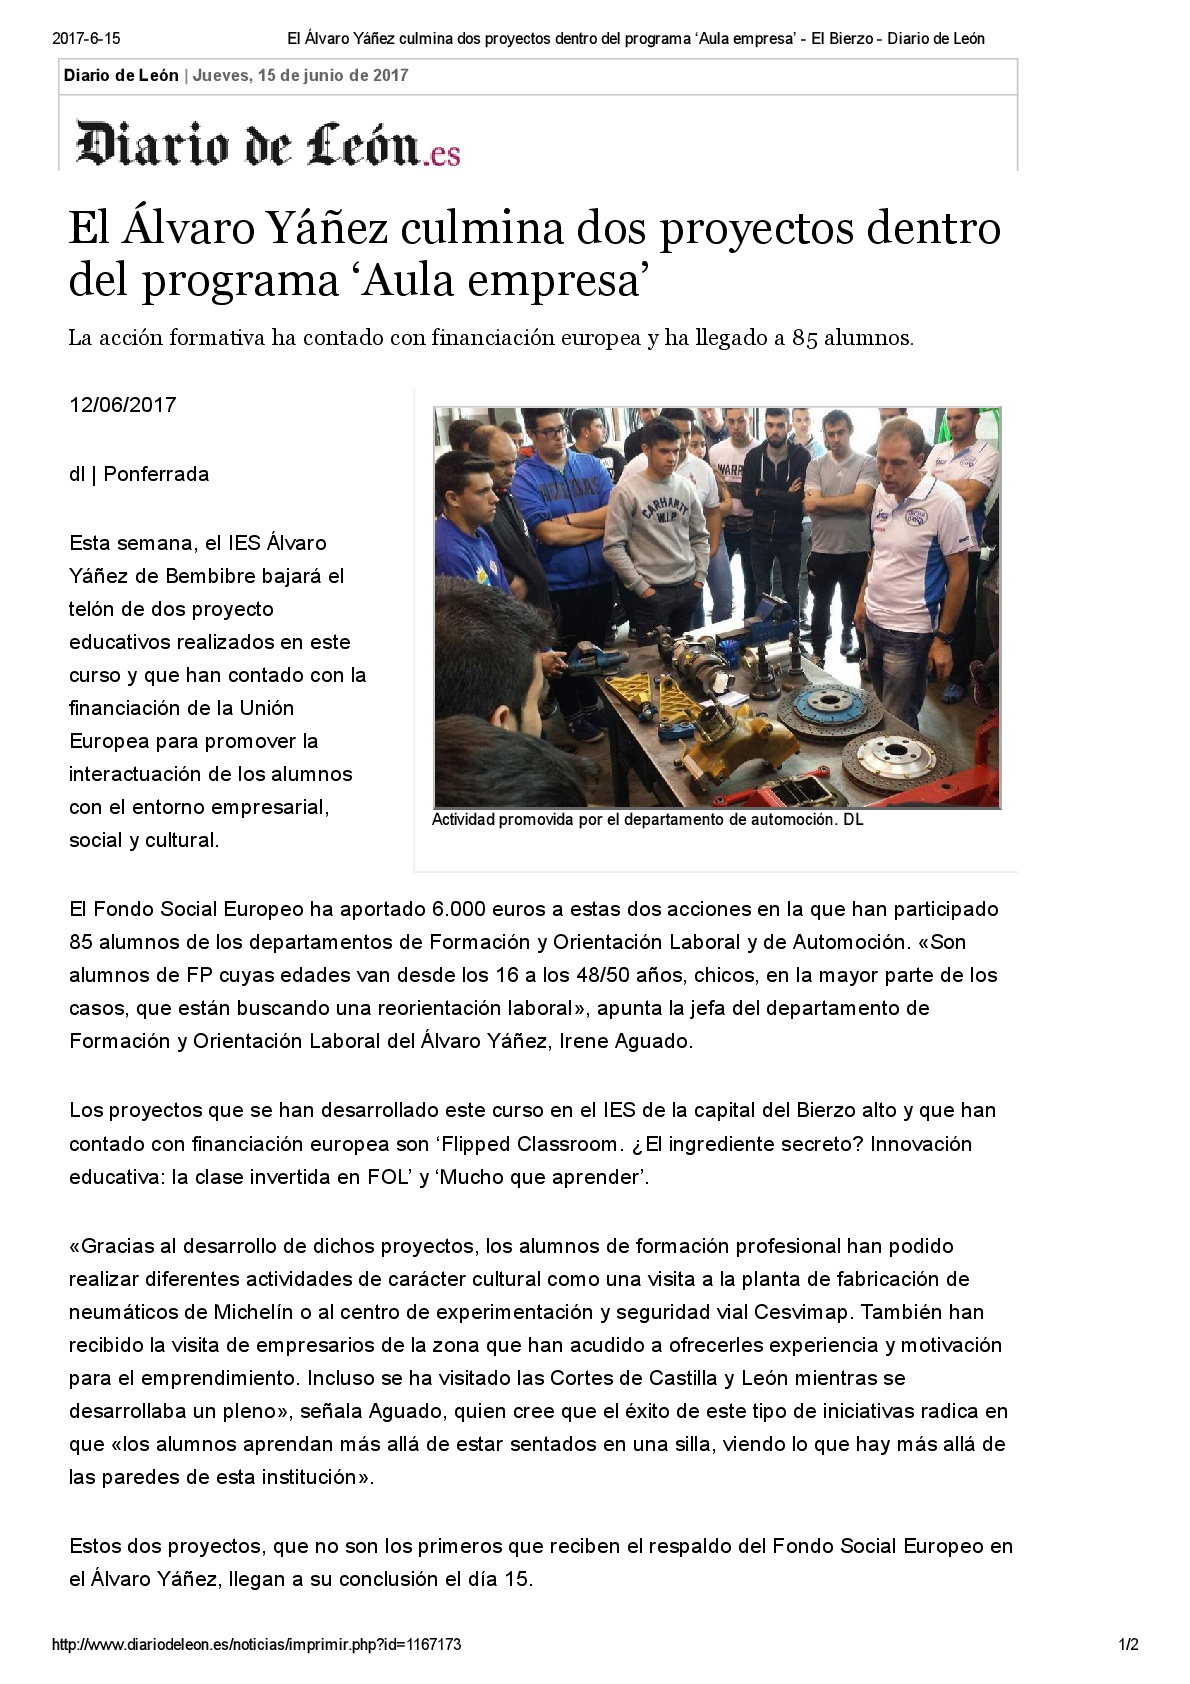 AULA EMPRESA noticia Diario de León 2017